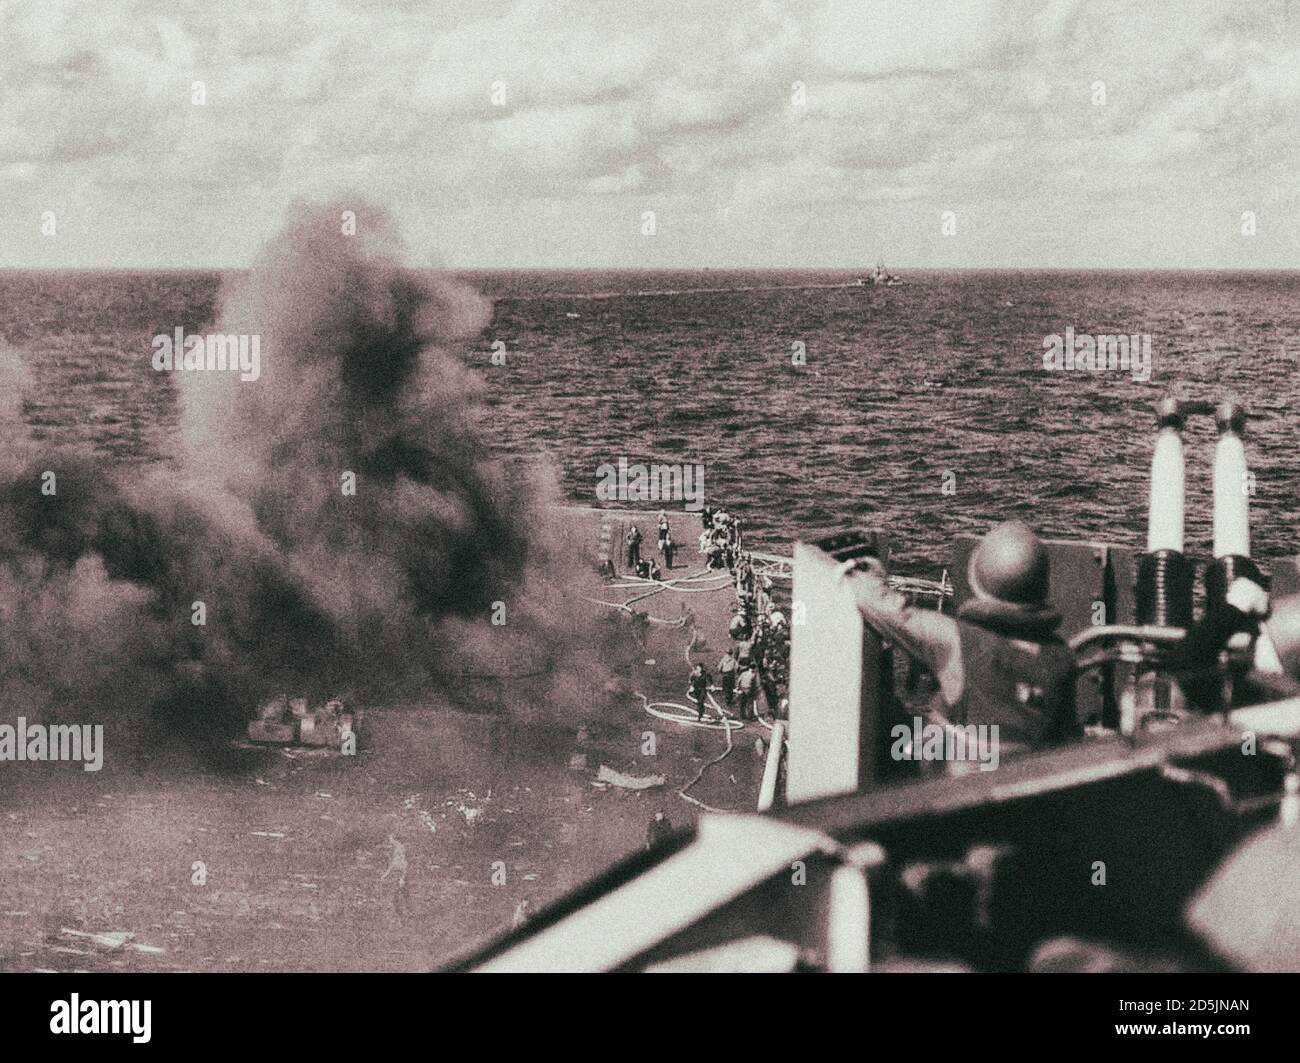 El portaaviones Ticonderoga de EE.UU. (CV-14) después del ataque kamikaze japonés, el avión Kamikaze se estrelló en la cubierta de vuelo, y su bomba explo Foto de stock